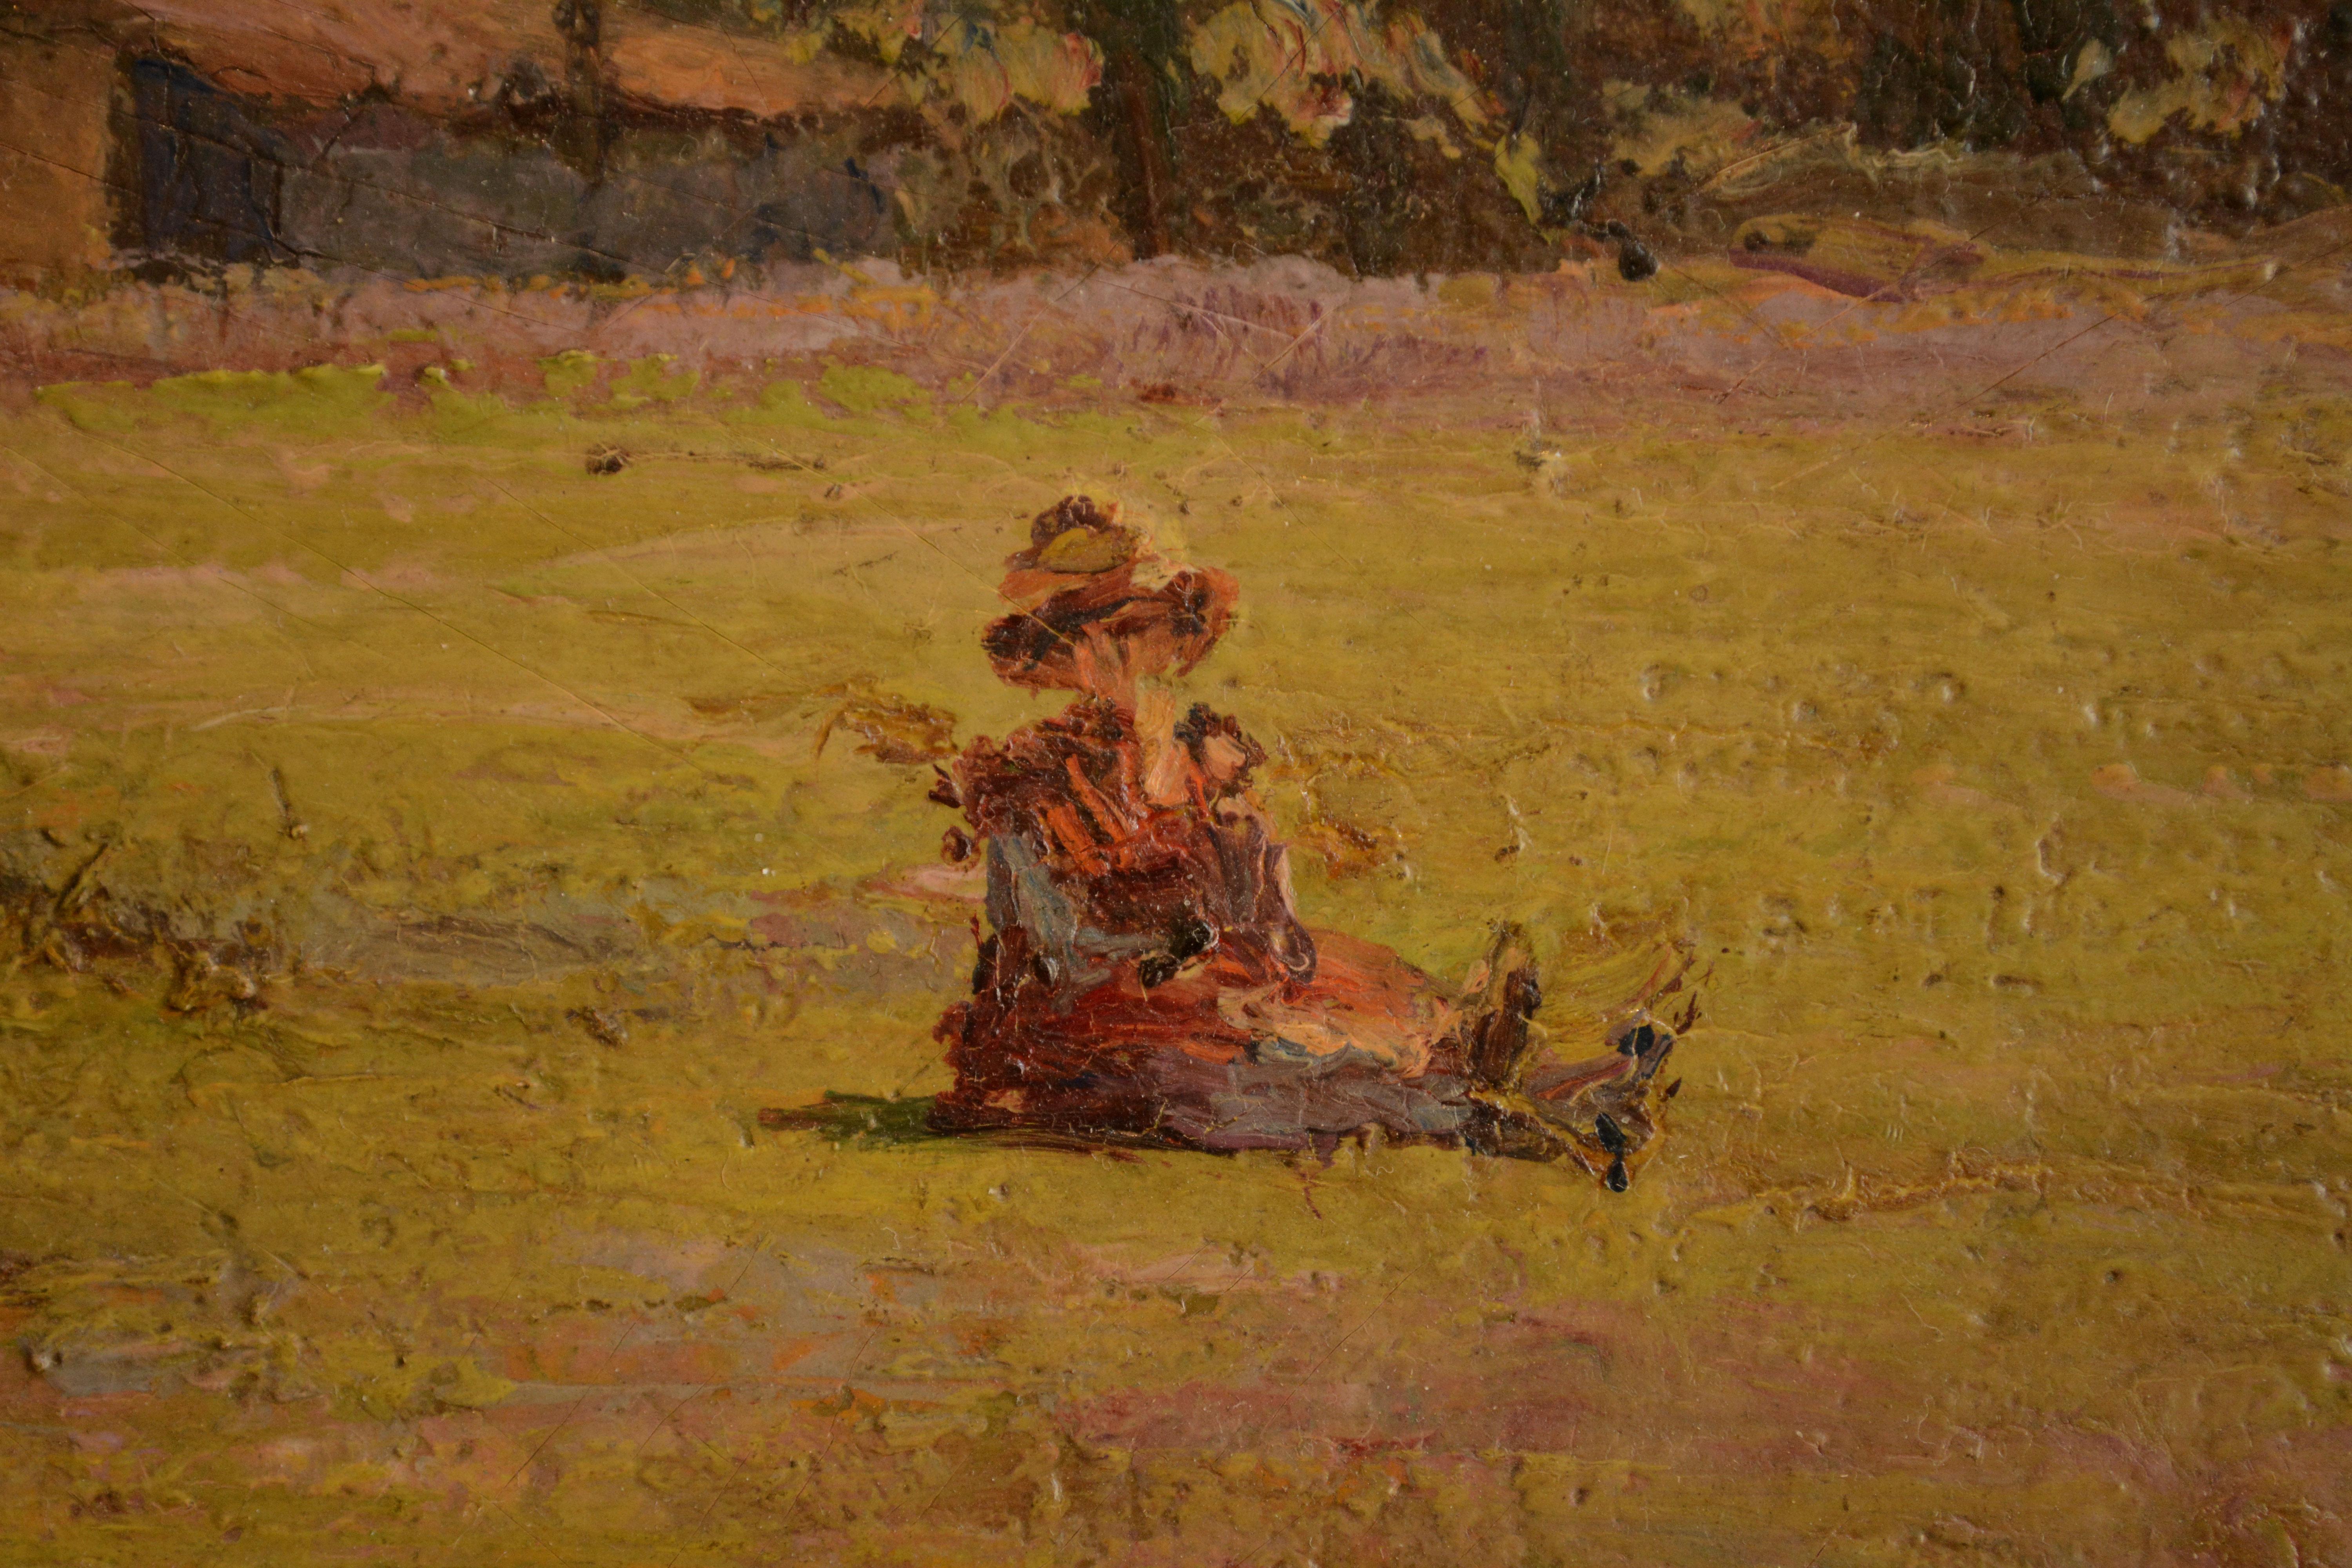 girl in a field